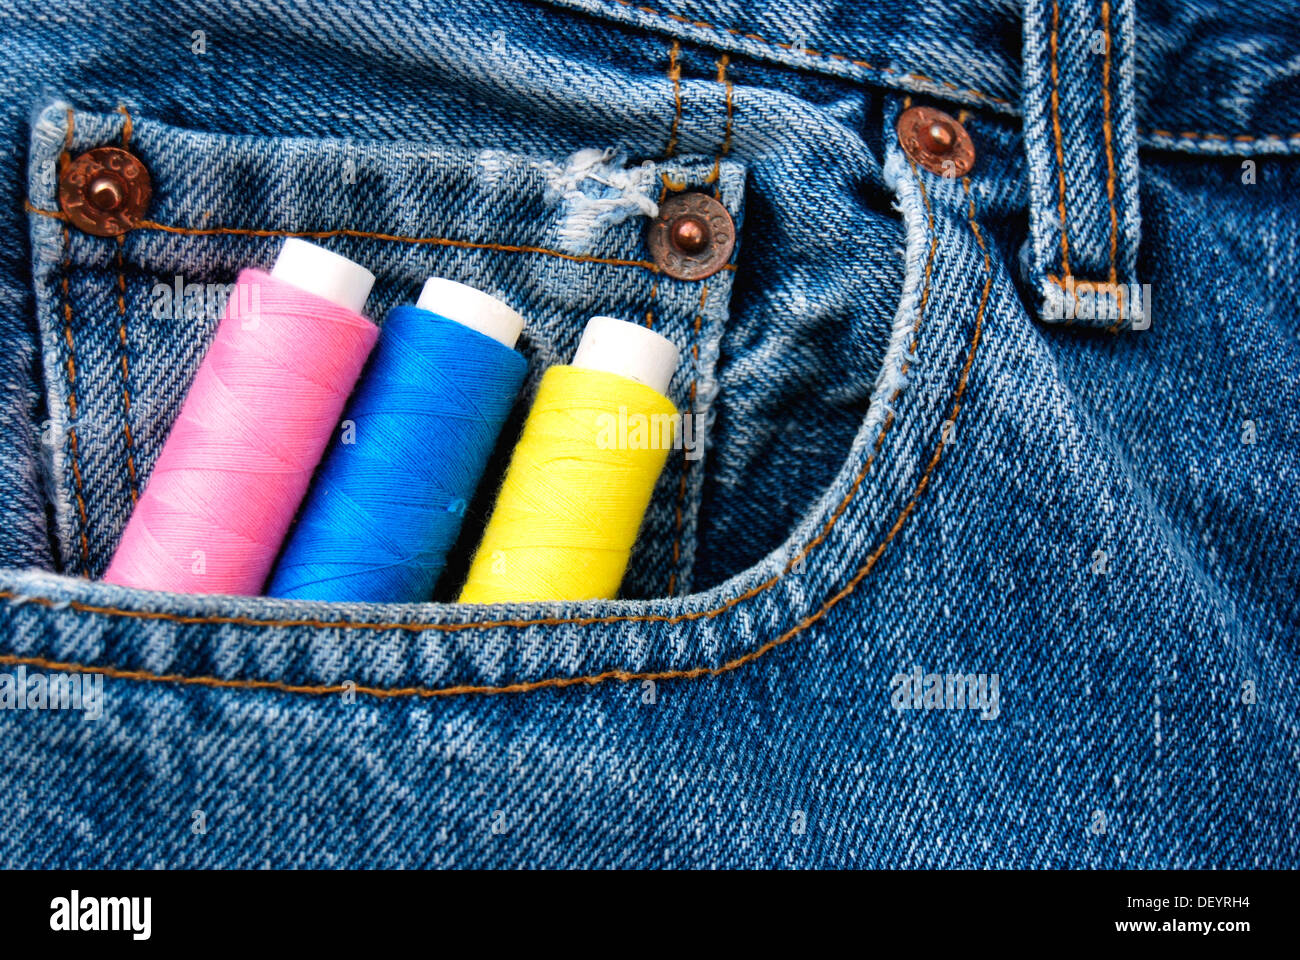 Bobines, bobines de fil, coloré, pocket, jeans Banque D'Images